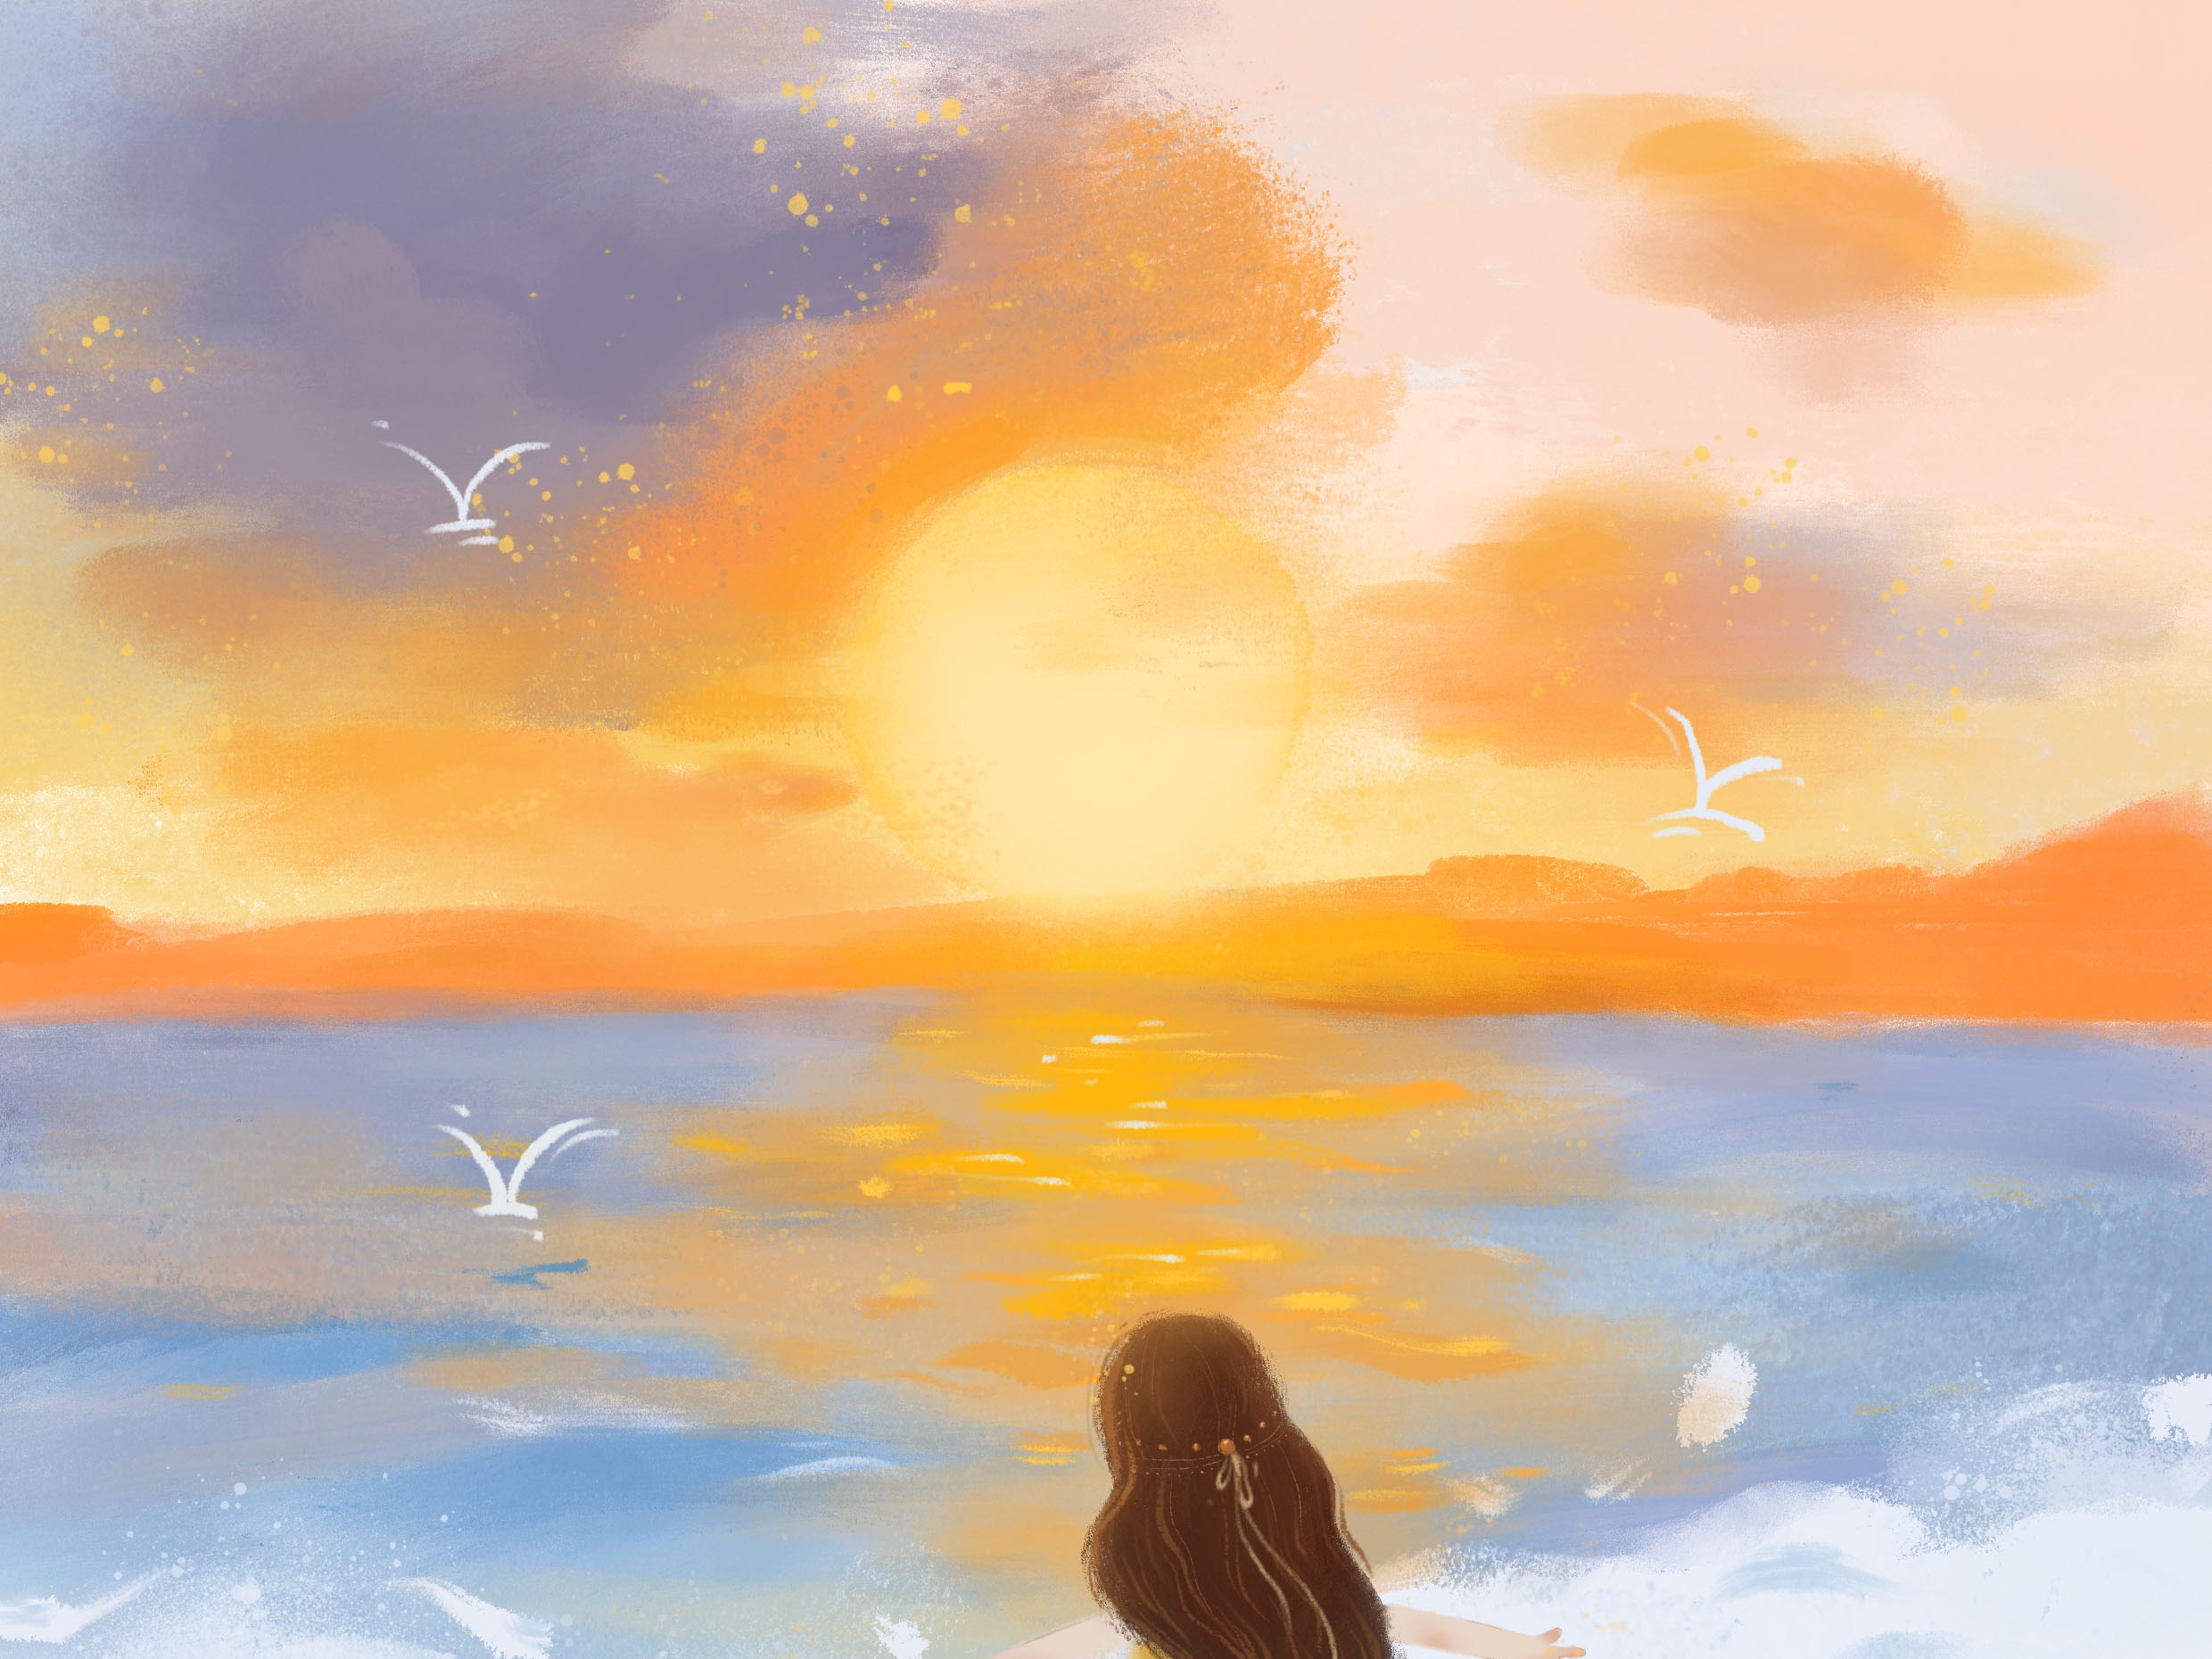 在夕阳的余晖里一个人敞开胸怀拥抱着浩瀚的大海